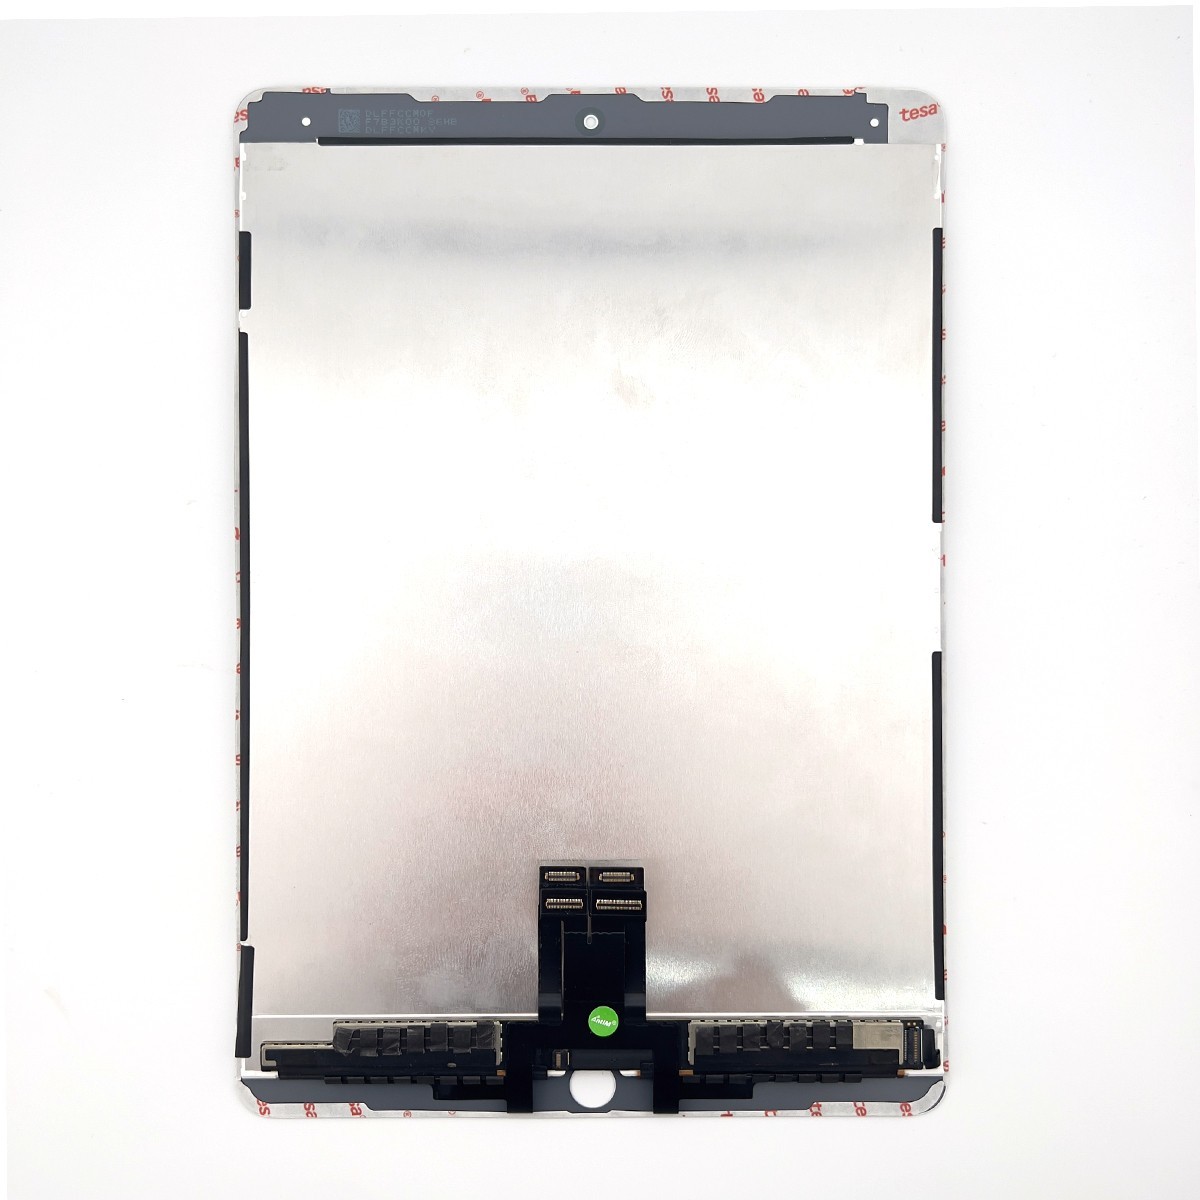 即日発送! iPad Pro9.7 液晶 一体型 A1673 A1674 A1675 フロントパネル 白 タッチスクリーン交換 デジタイザ修理 画面  ガラス 工具付